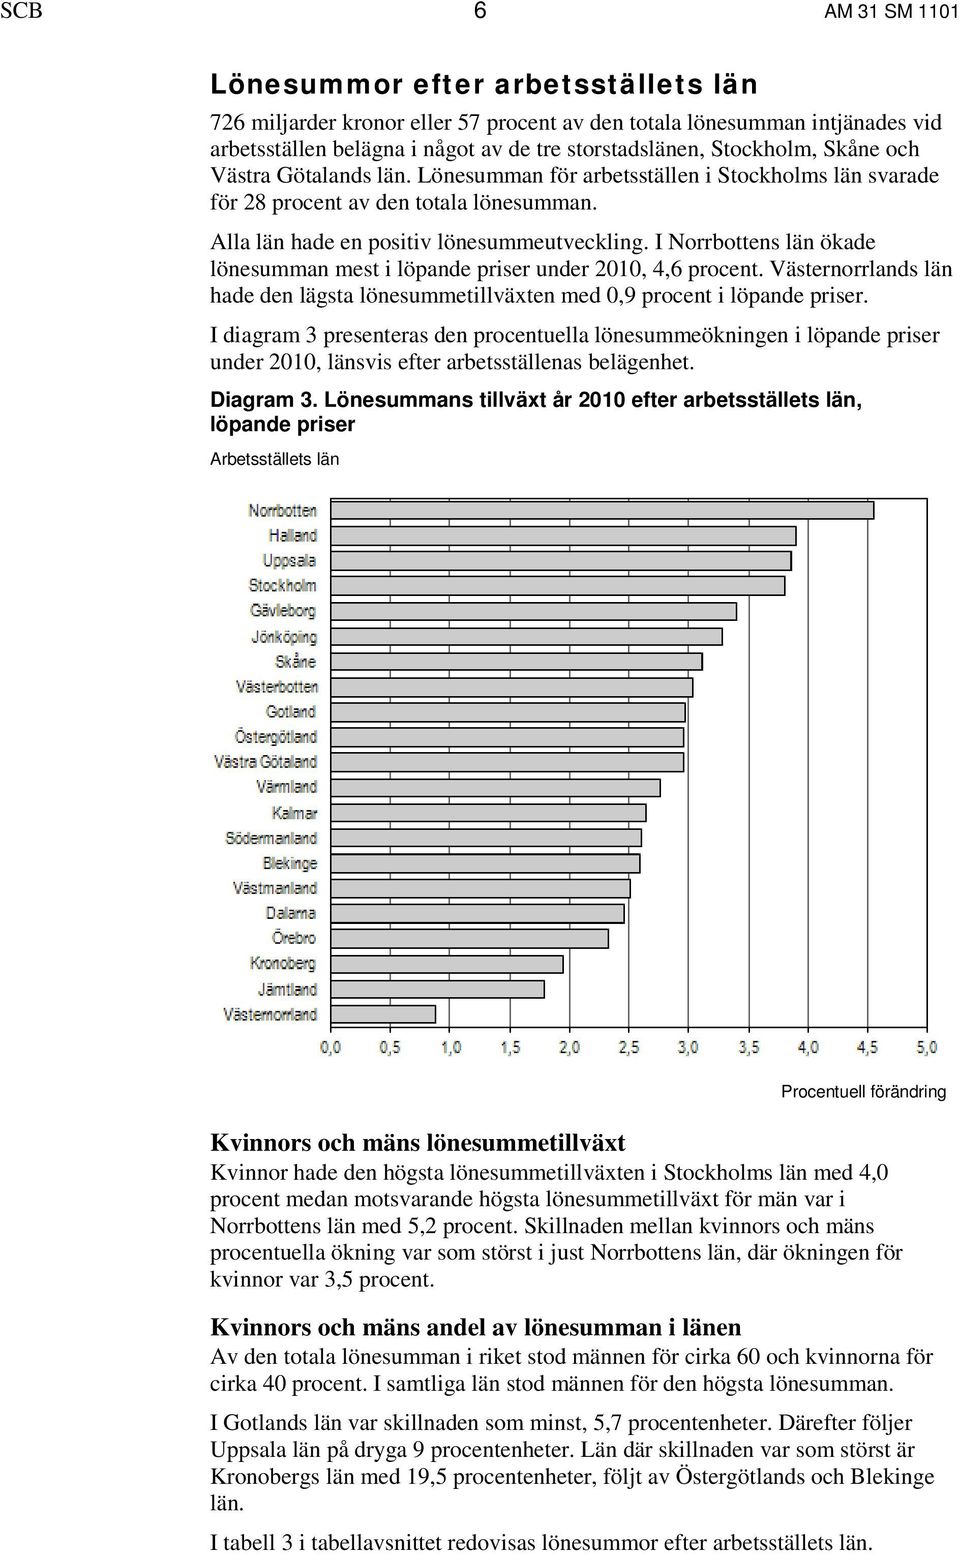 I Norrbottens län ökade lönesumman mest i löpande priser under 2010, 4,6 procent. Västernorrlands län hade den lägsta lönesummetillväxten med 0,9 procent i löpande priser.